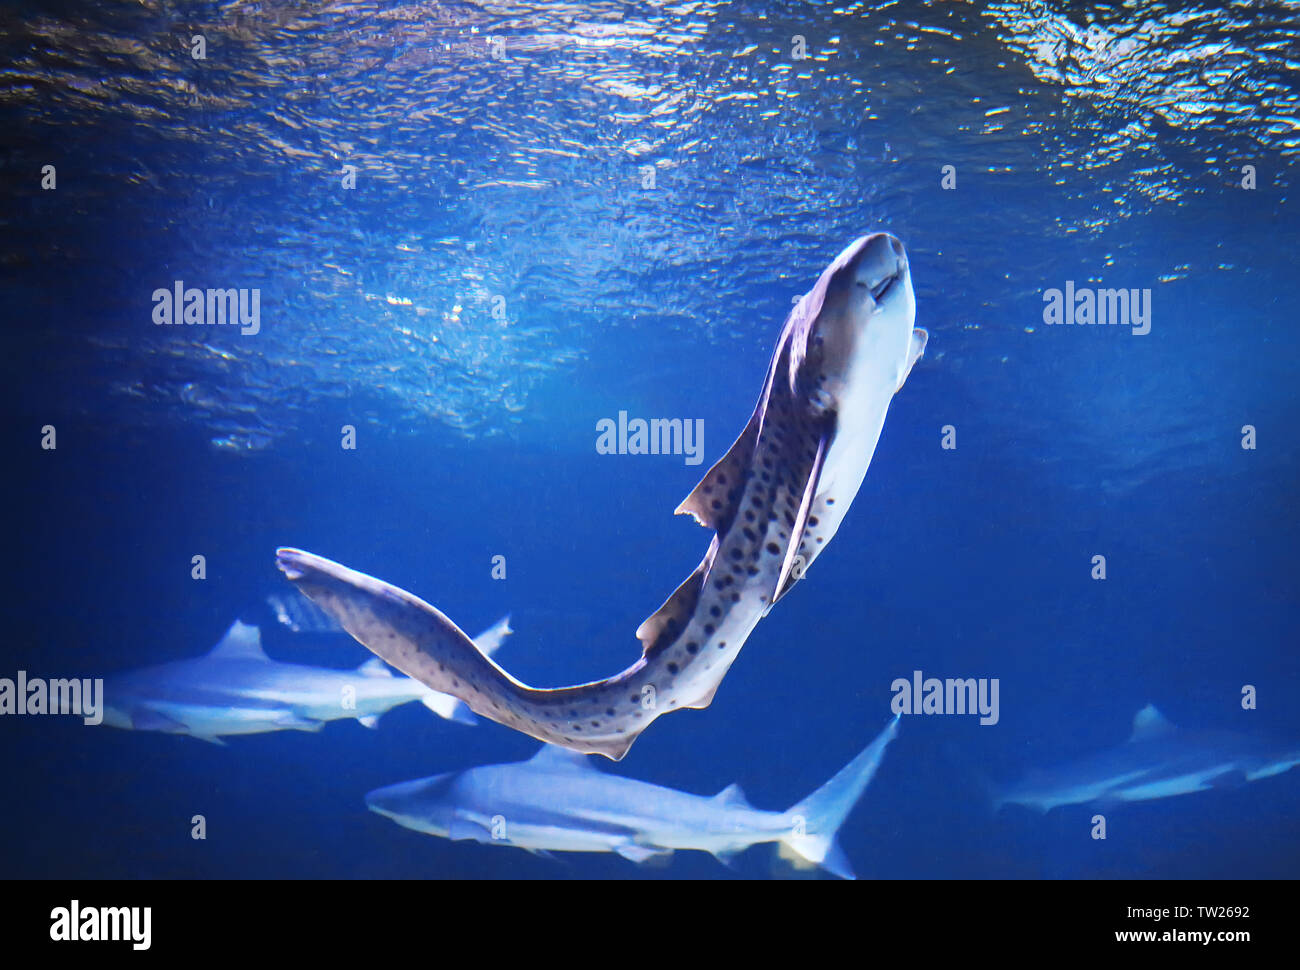 Cat shark swimming in big aquarium Stock Photo